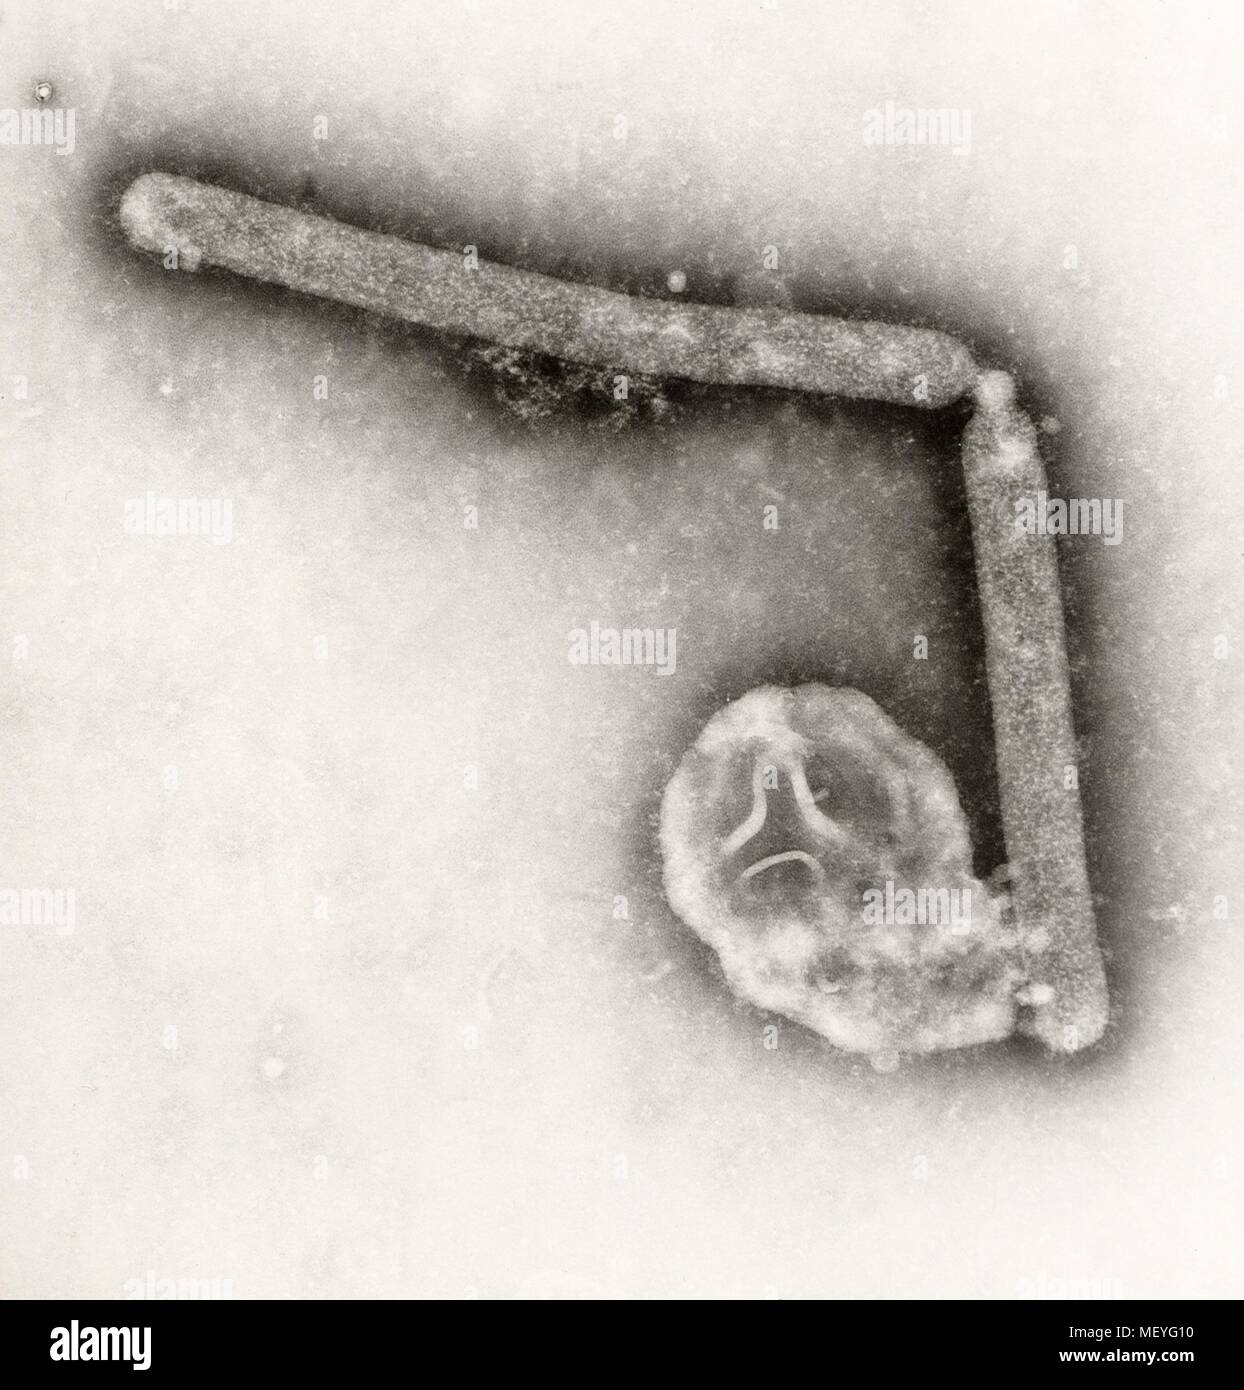 Virus A di influenza ha rivelato nel altamente scansione ingrandita al microscopio elettronico (SEM) immagine, 2005. Immagine cortesia di centri per il controllo delle malattie (CDC) / Cynthia Goldsmith, Jackie Katz. () Foto Stock